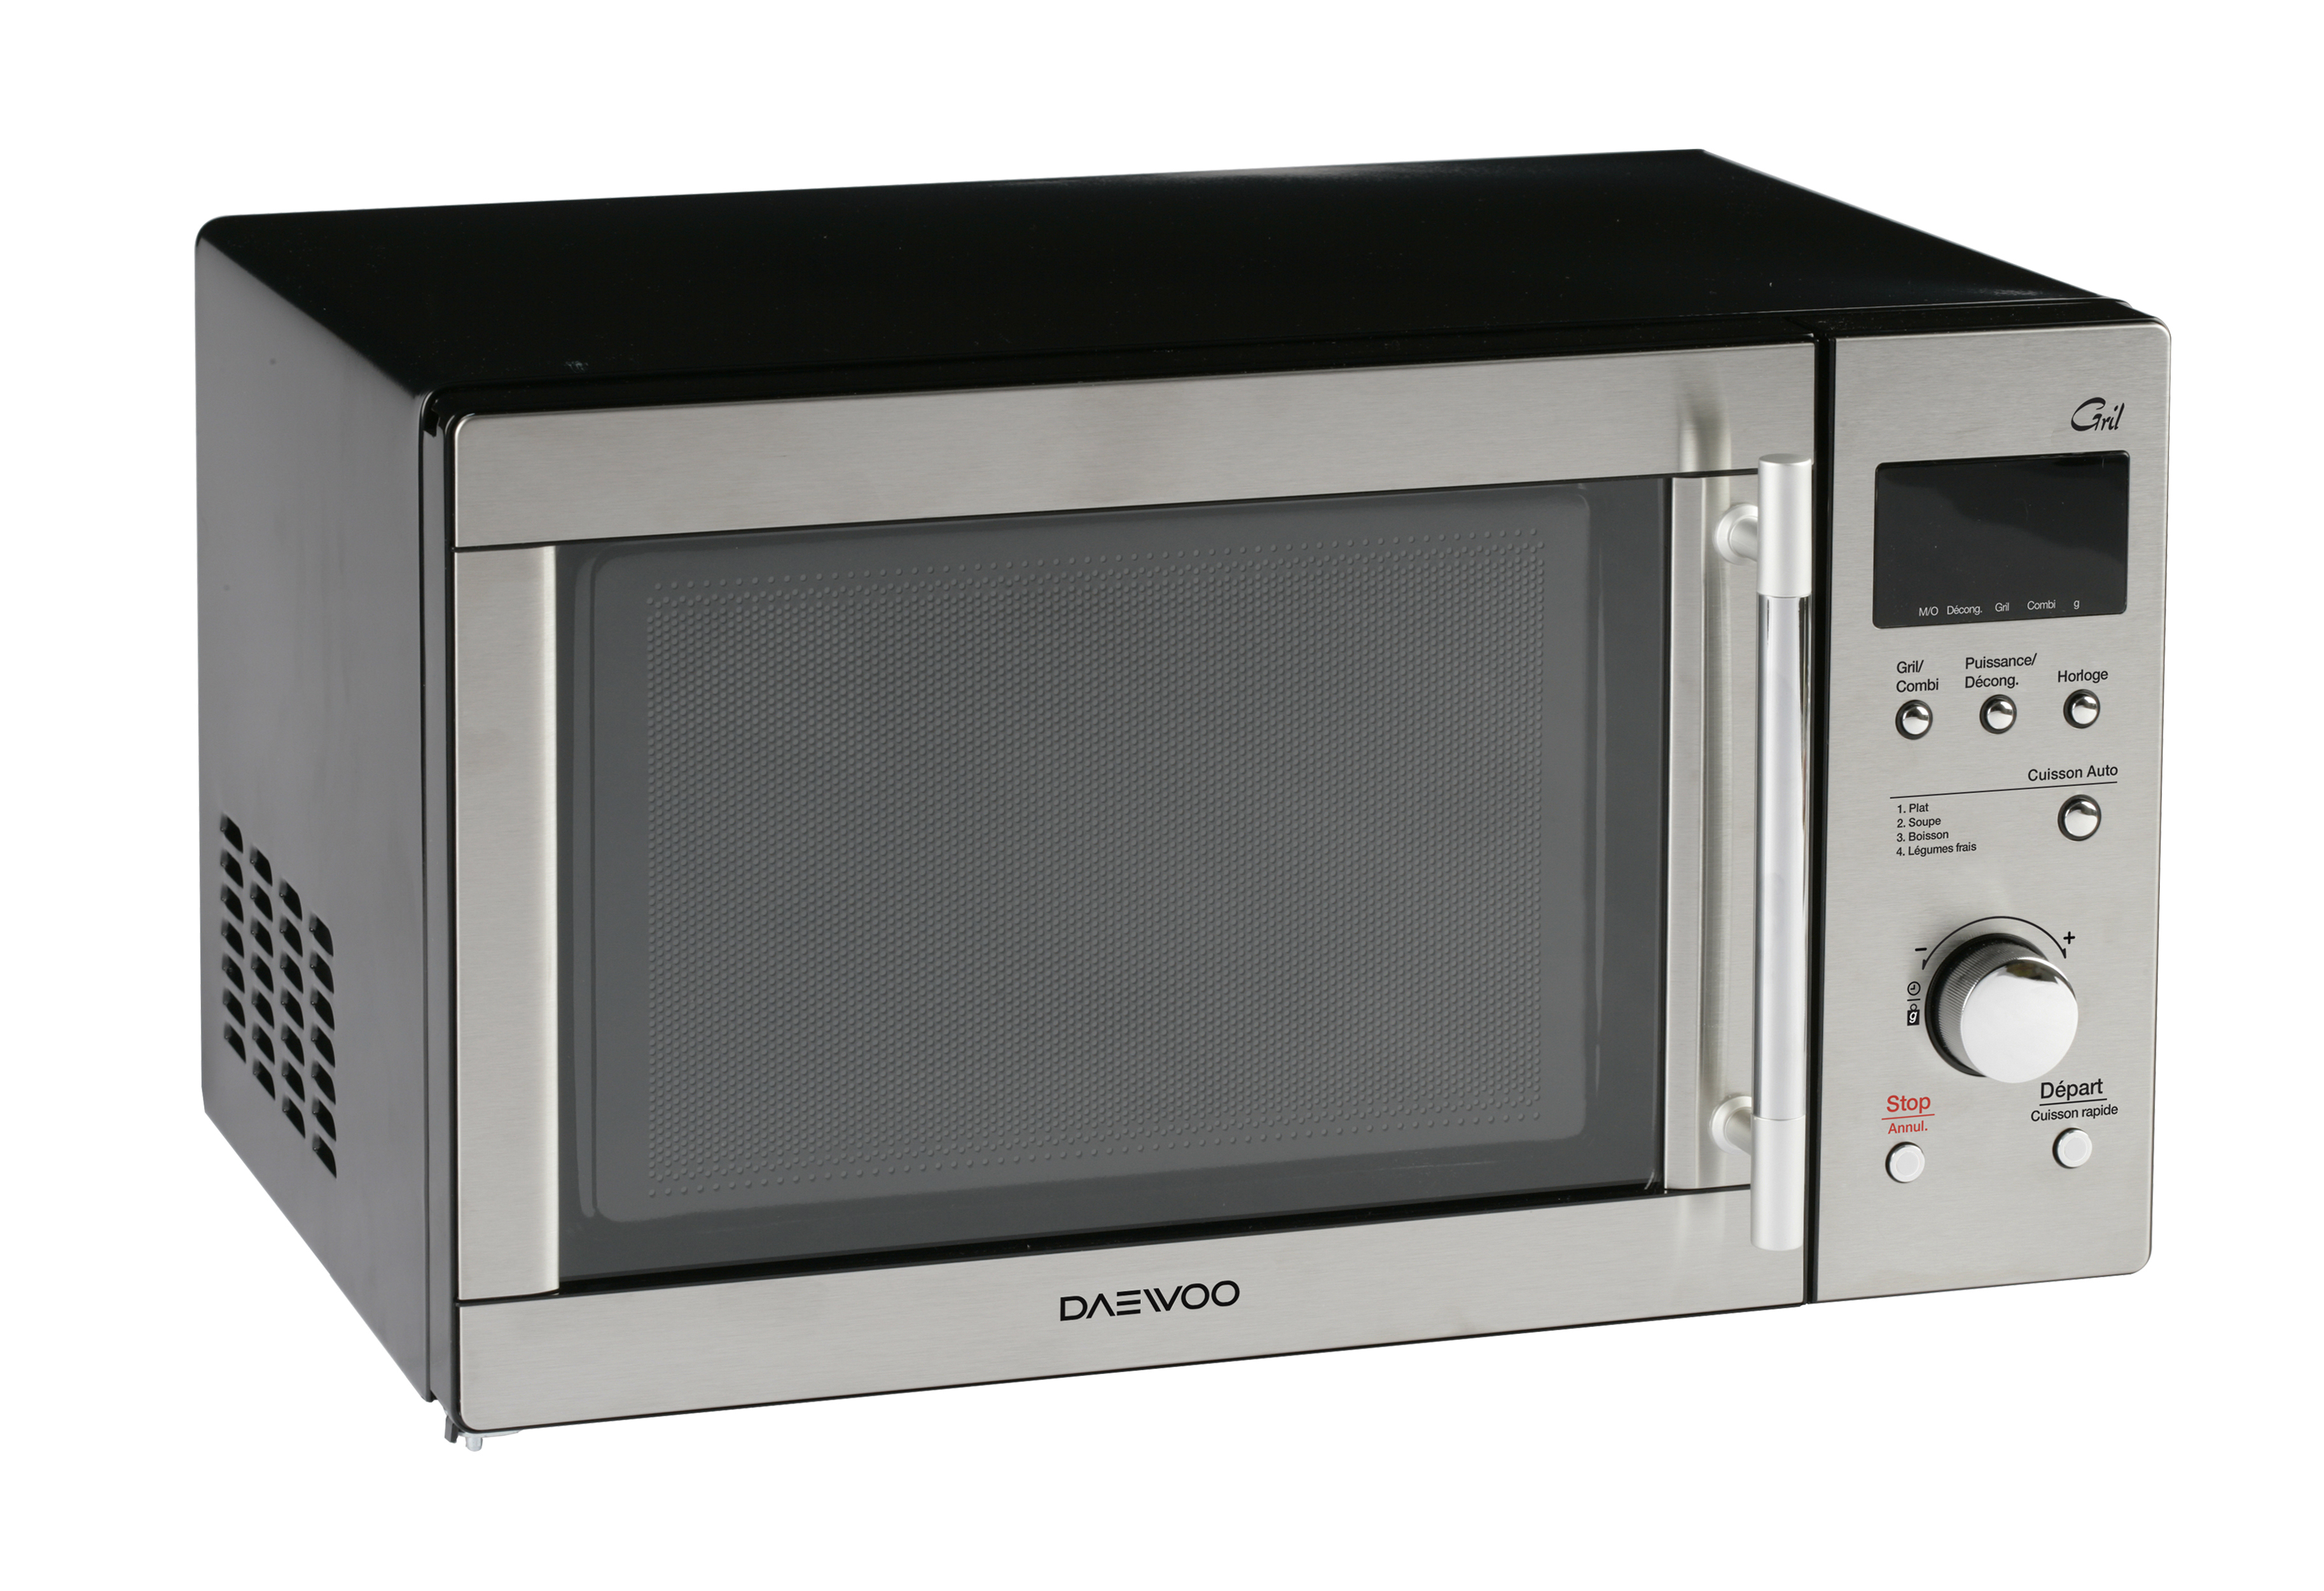 Найти свч. Микроволновая печь Daewoo Microwave. Микроволновая печь Daewoo Combi Grill. Микроволновая печь Daewoo Kog. Микроволновая печь Daewoo нержавейка.